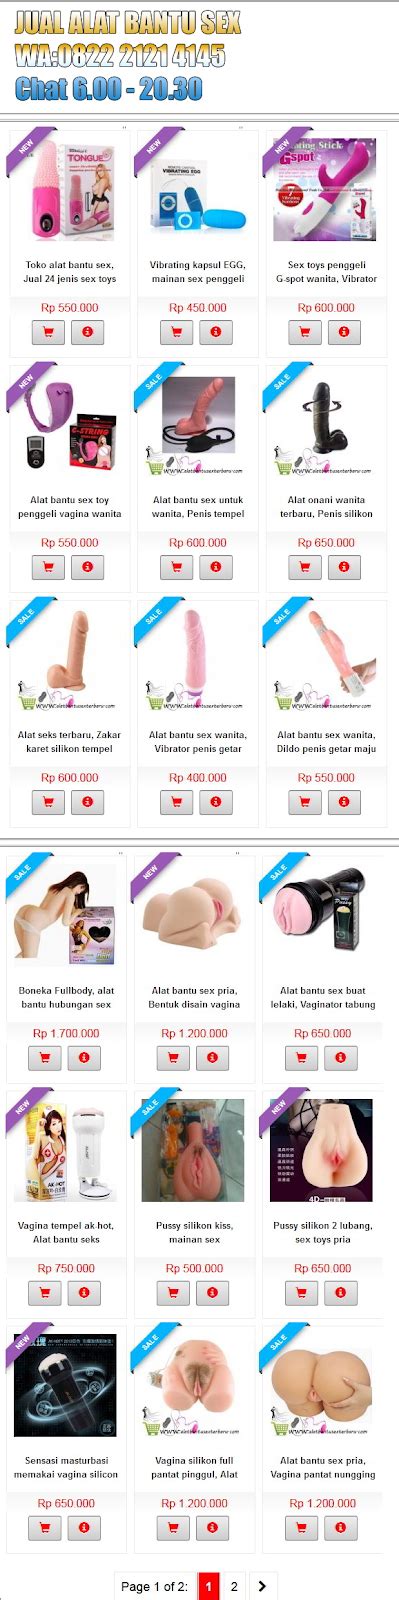 Beli alat onani pria online berkualitas dengan harga murah terbaru 2021 di tokopedia! Cara Membuat Alat Bantu Sex Pria Alami